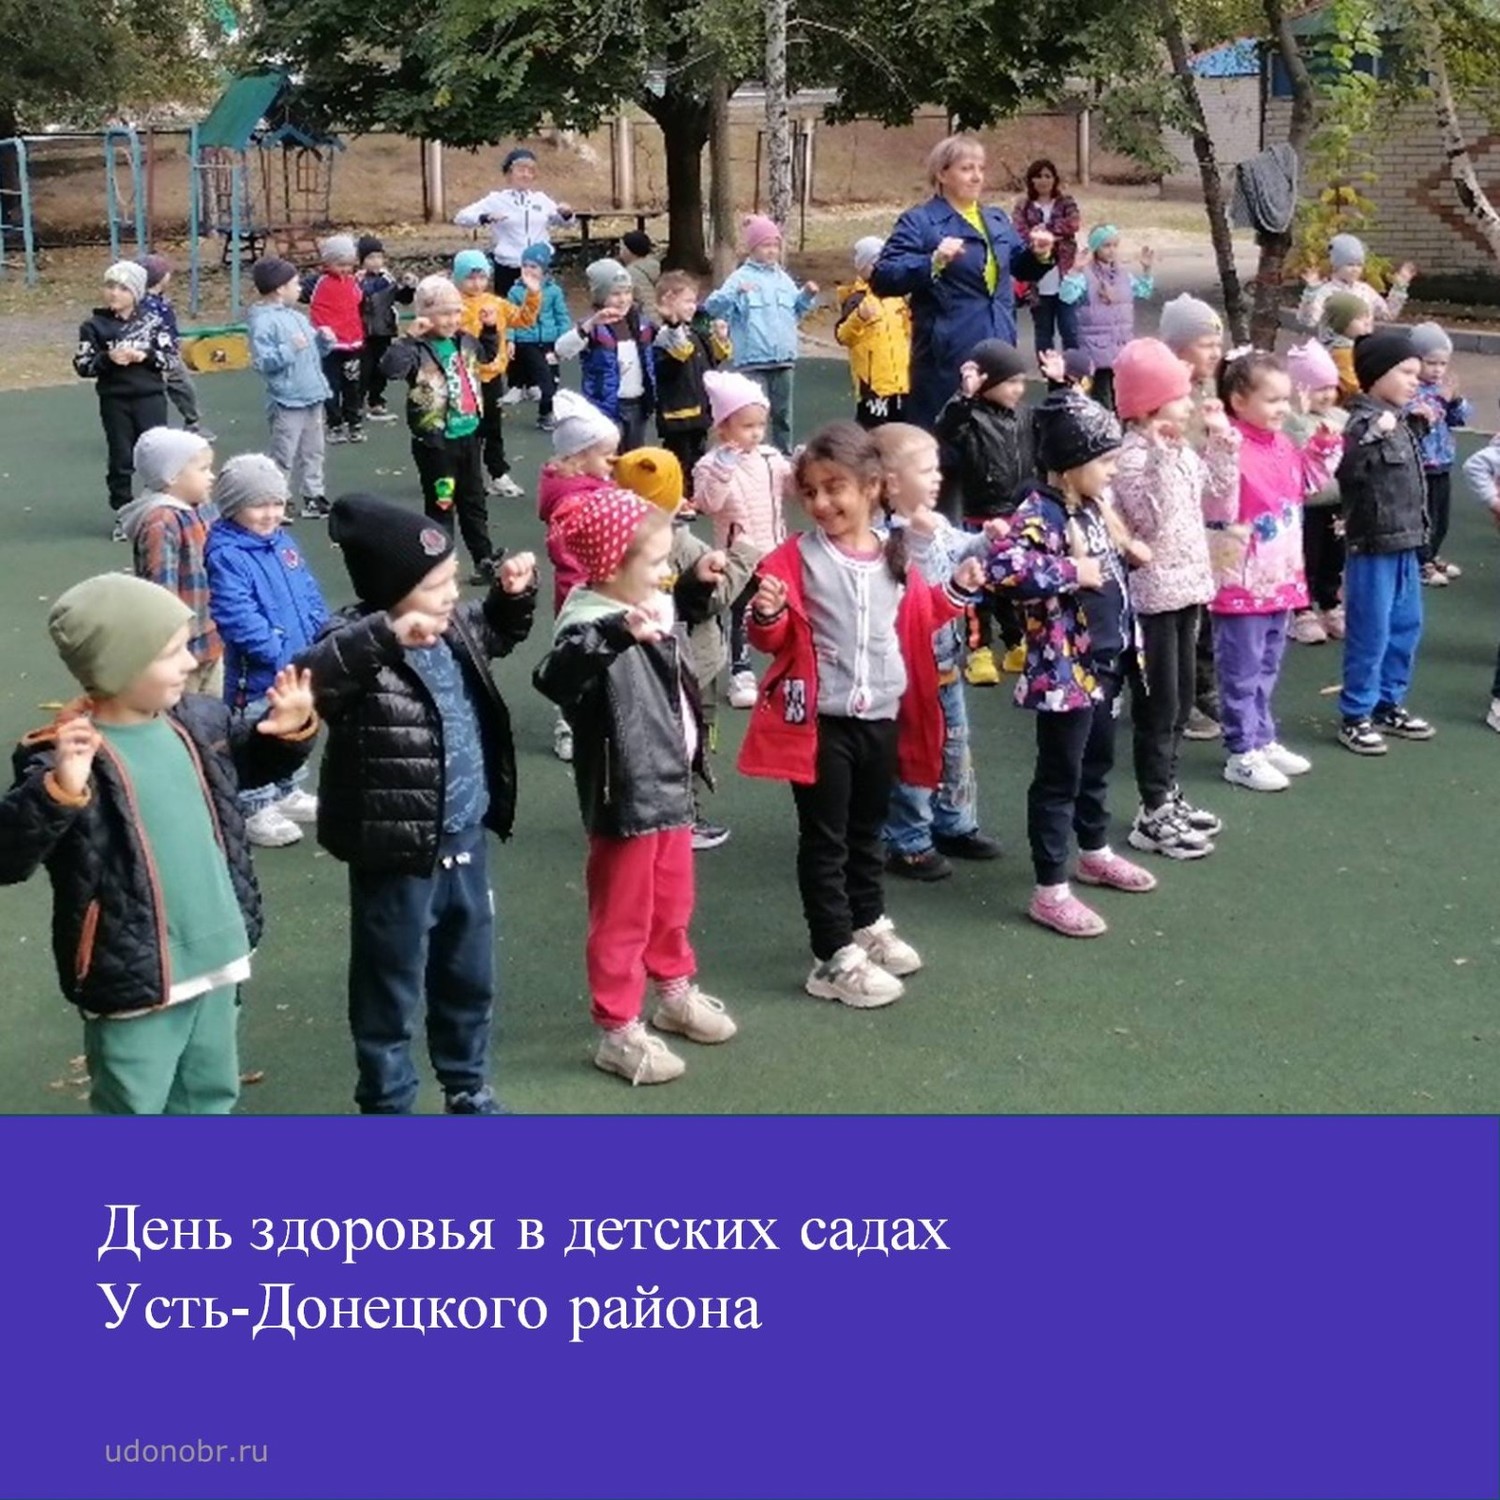 День здоровья в детских садах Усть-Донецкого района